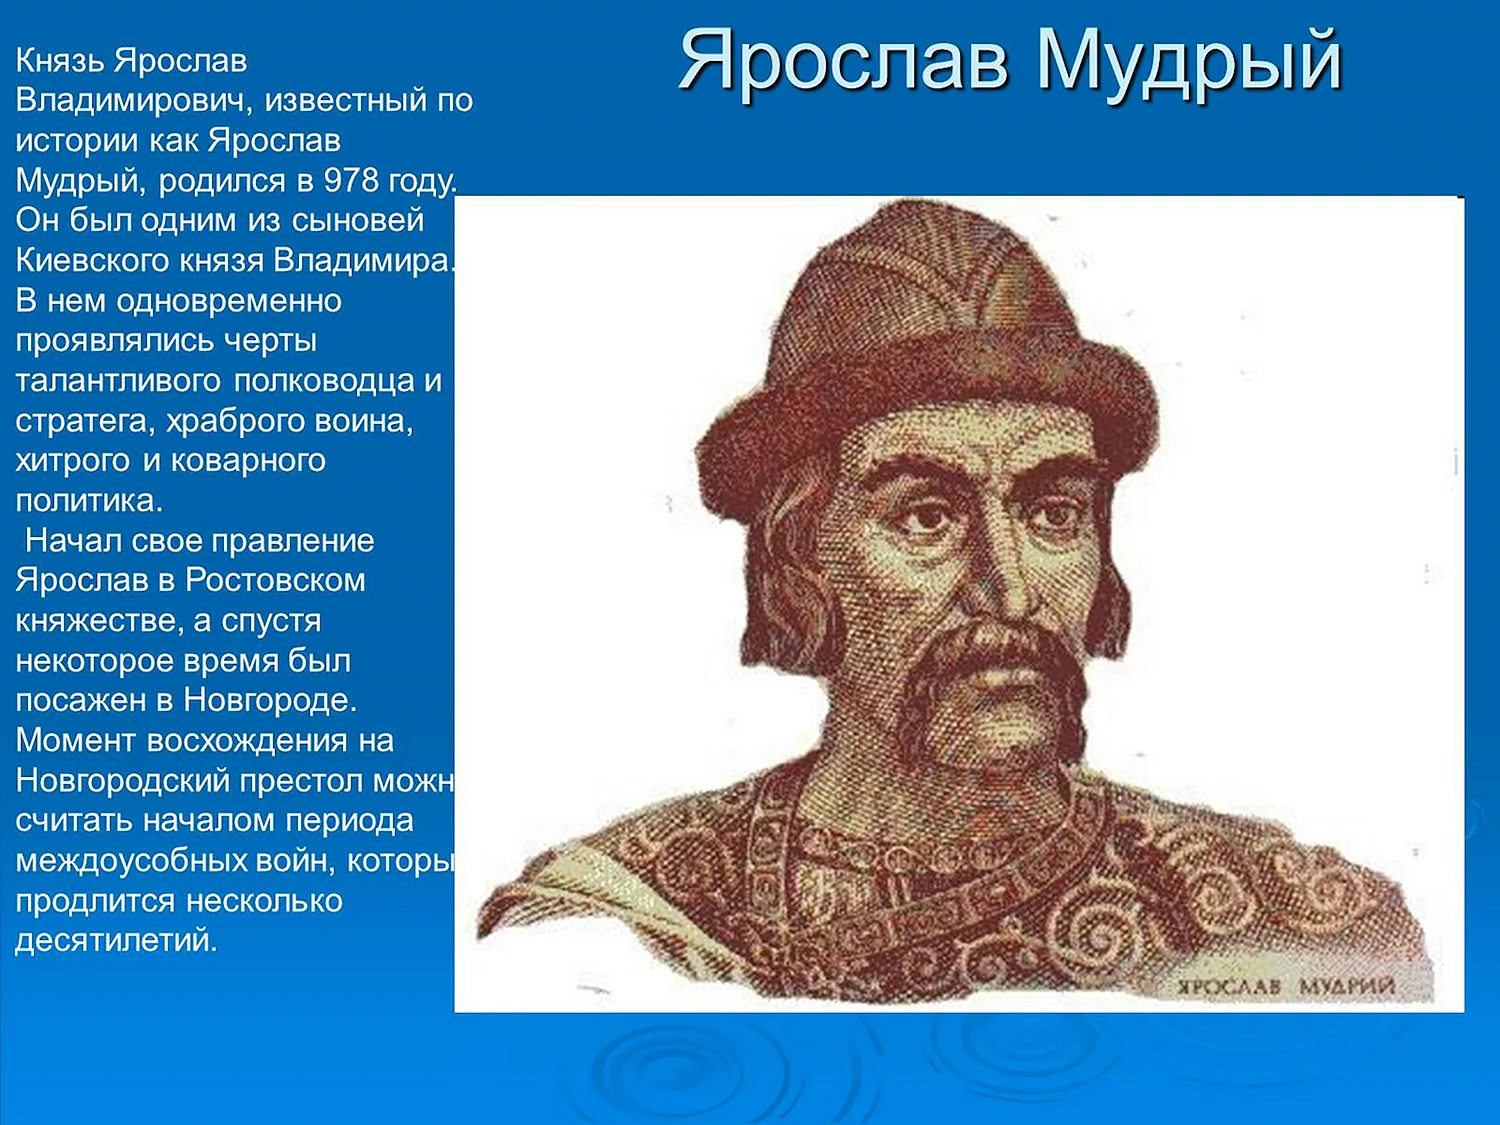 Князь Ярослав 1019-1054